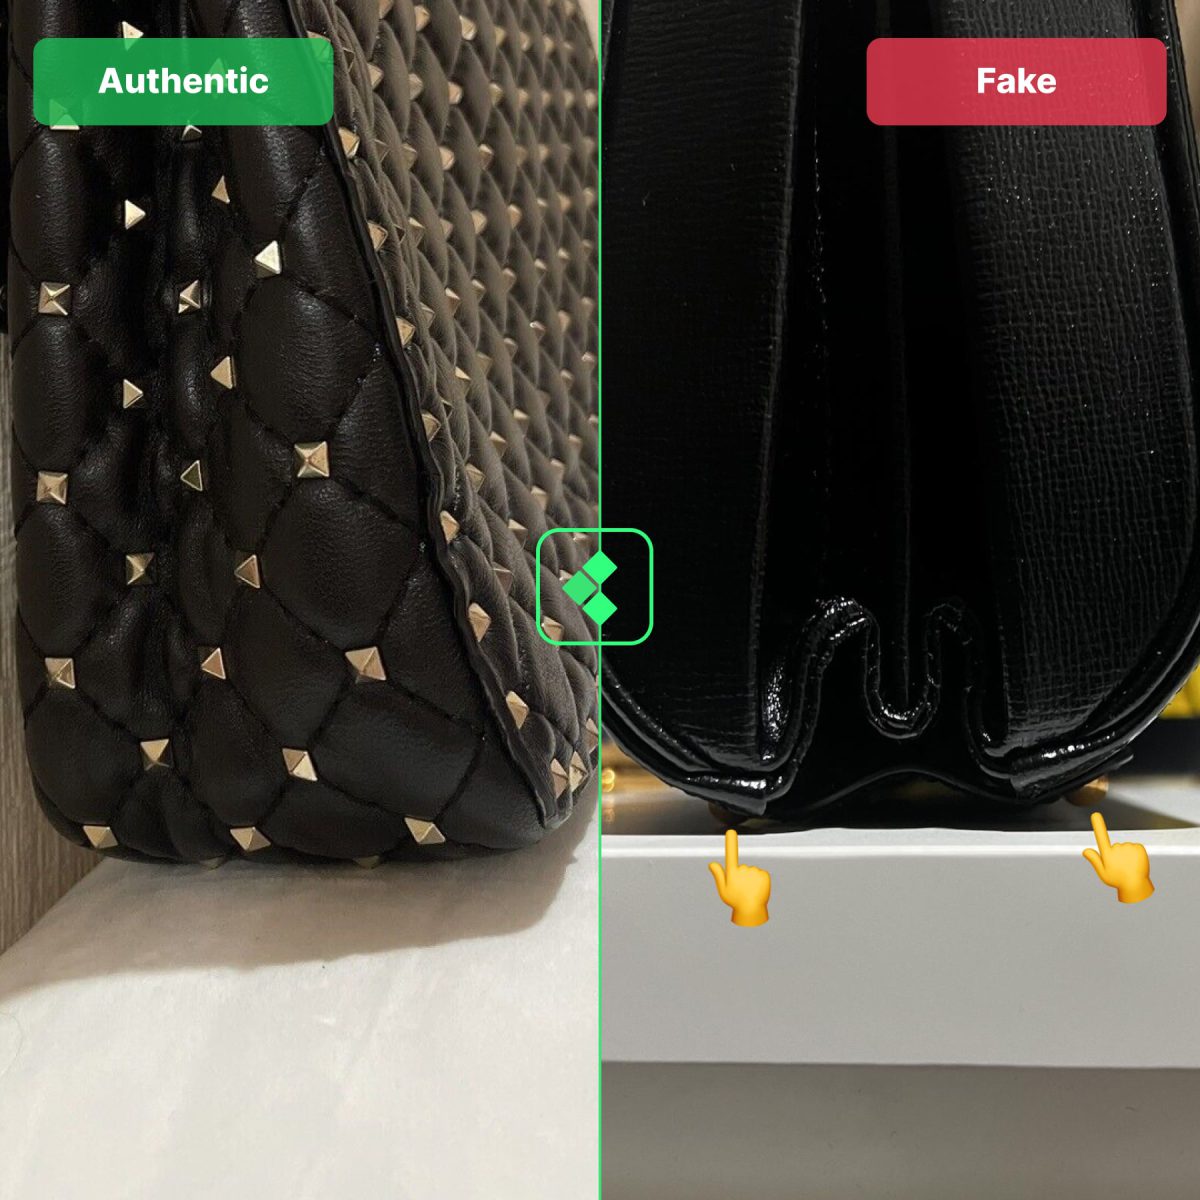 Comparing real vs fake Valentino bag shapes